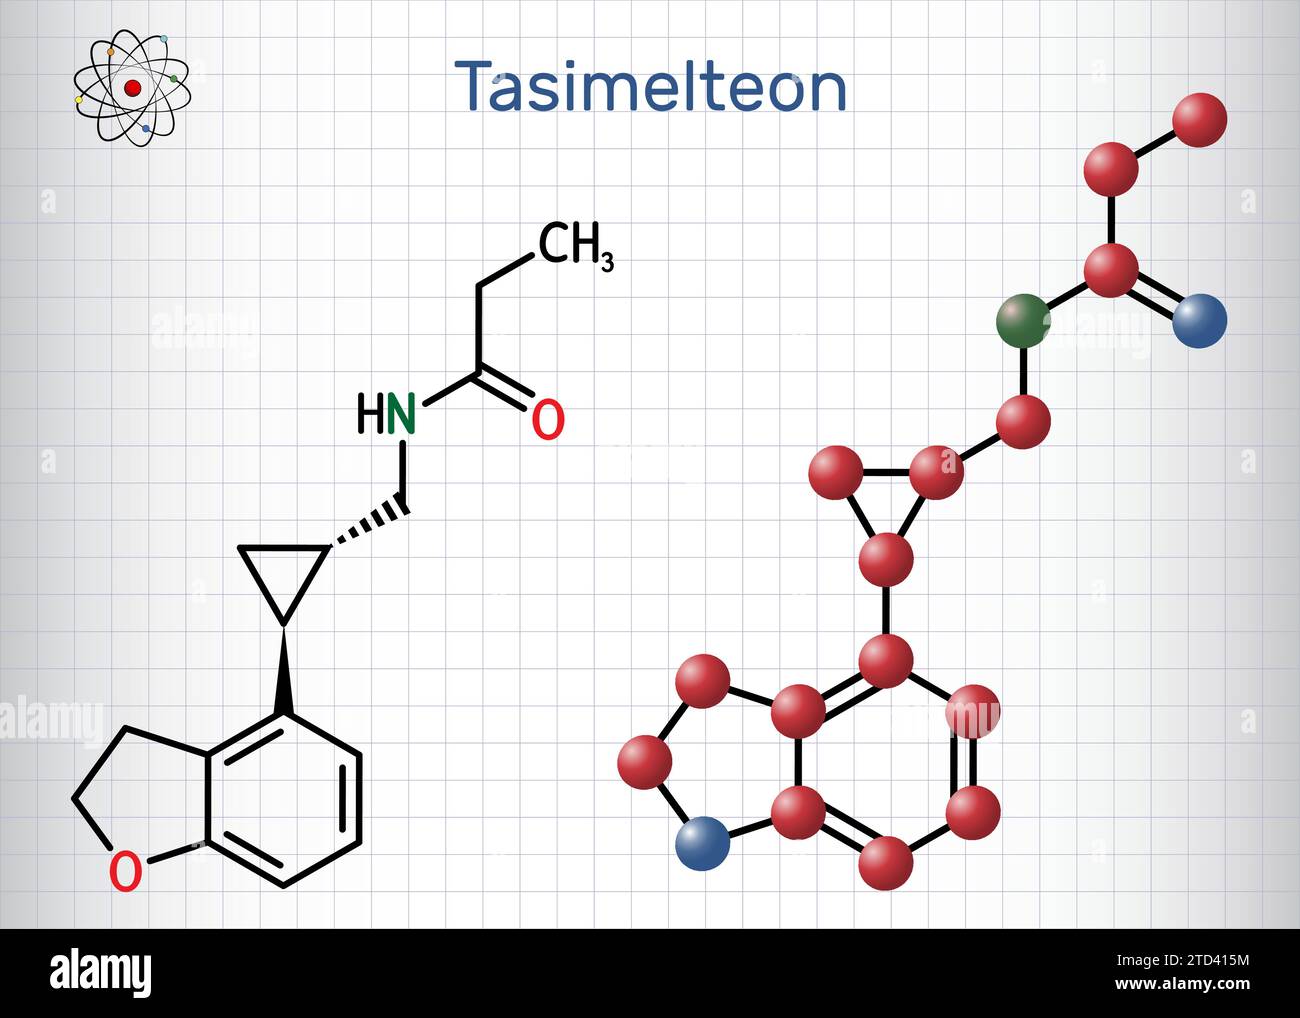 Tasimelteon-Molekül. Es ist ein Schlafstörungen-Medikament. Strukturelle chemische Formel und Molekülmodell. Blatt Papier in einem Käfig. Stock Vektor